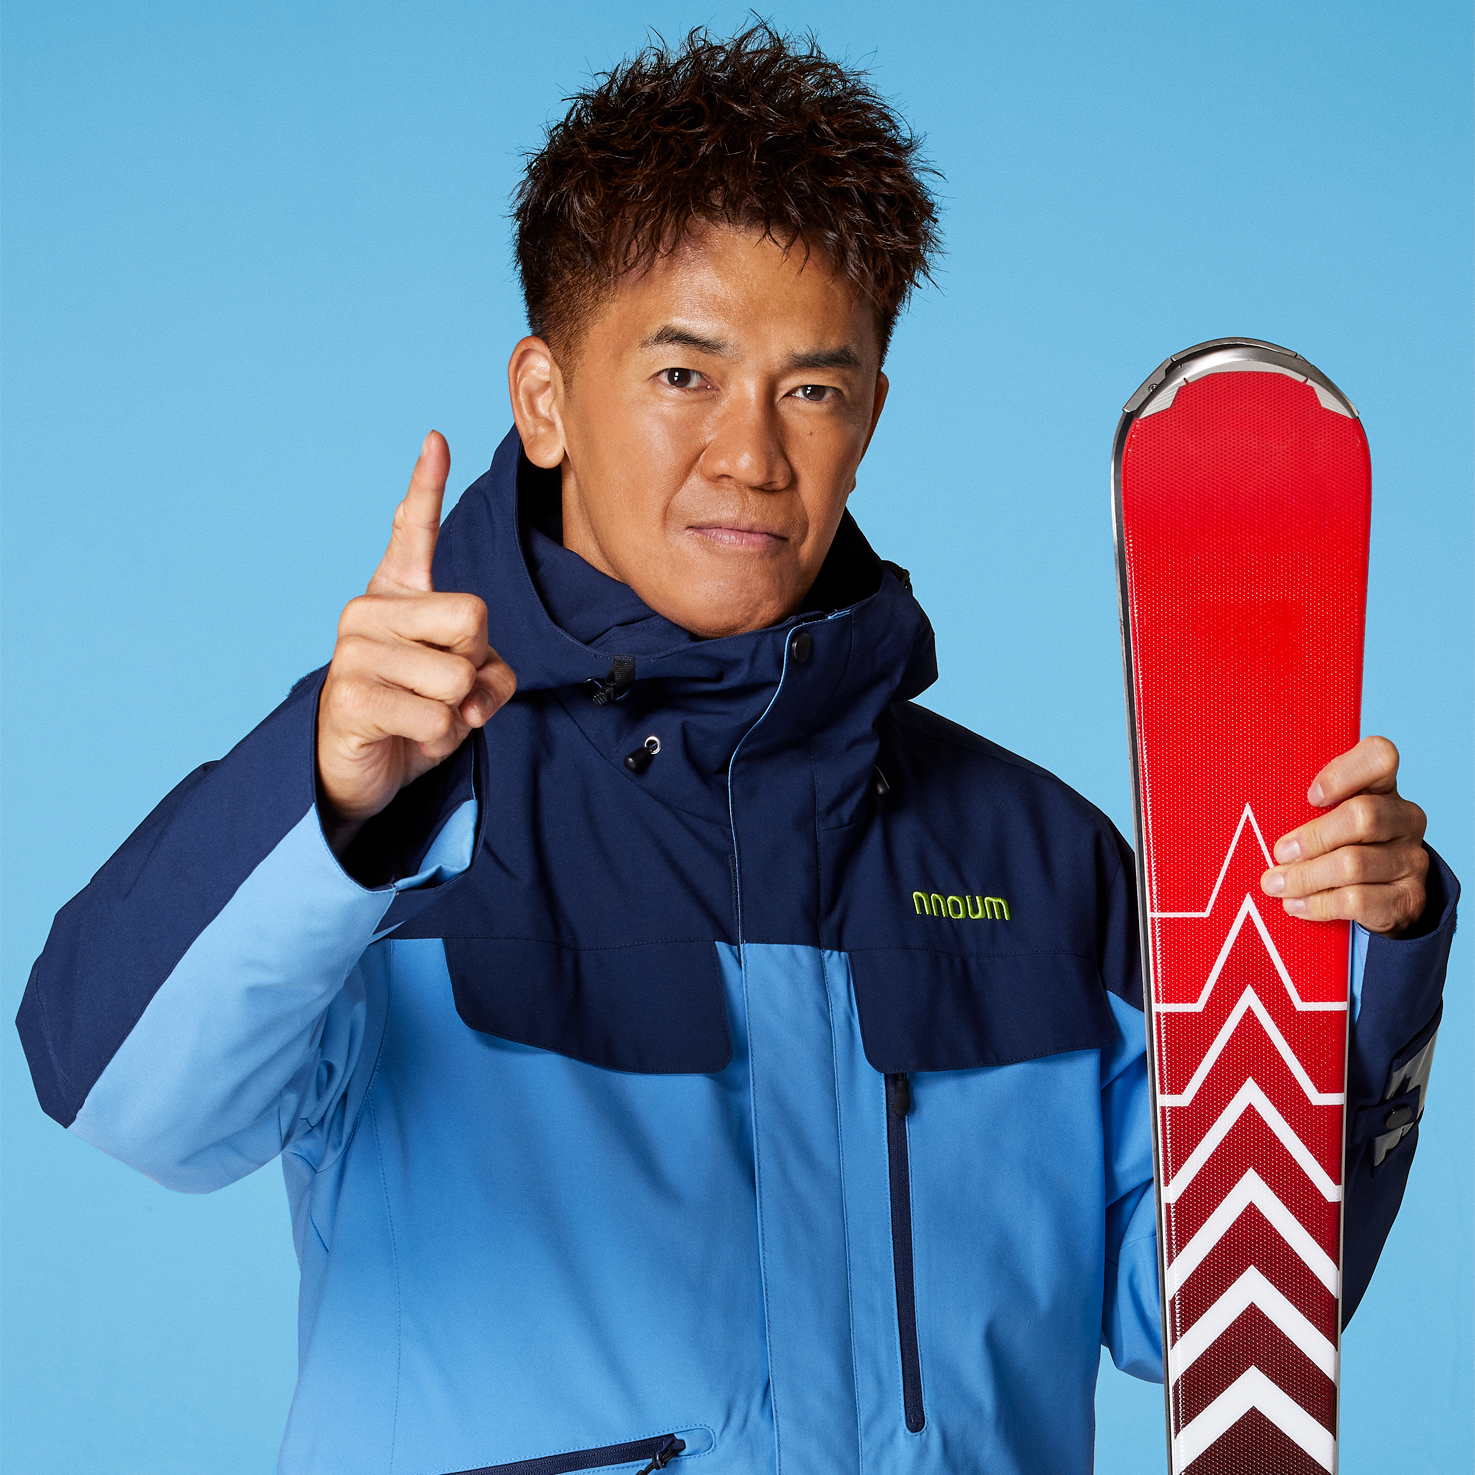 武井壮、2シーズン連続でスキー用品ネット通販日本トップクラス
「タナベスポーツ」公式アンバサダー、並びに「nnoum」
着用モデルに！10月28日(金)よりPR活動を開始